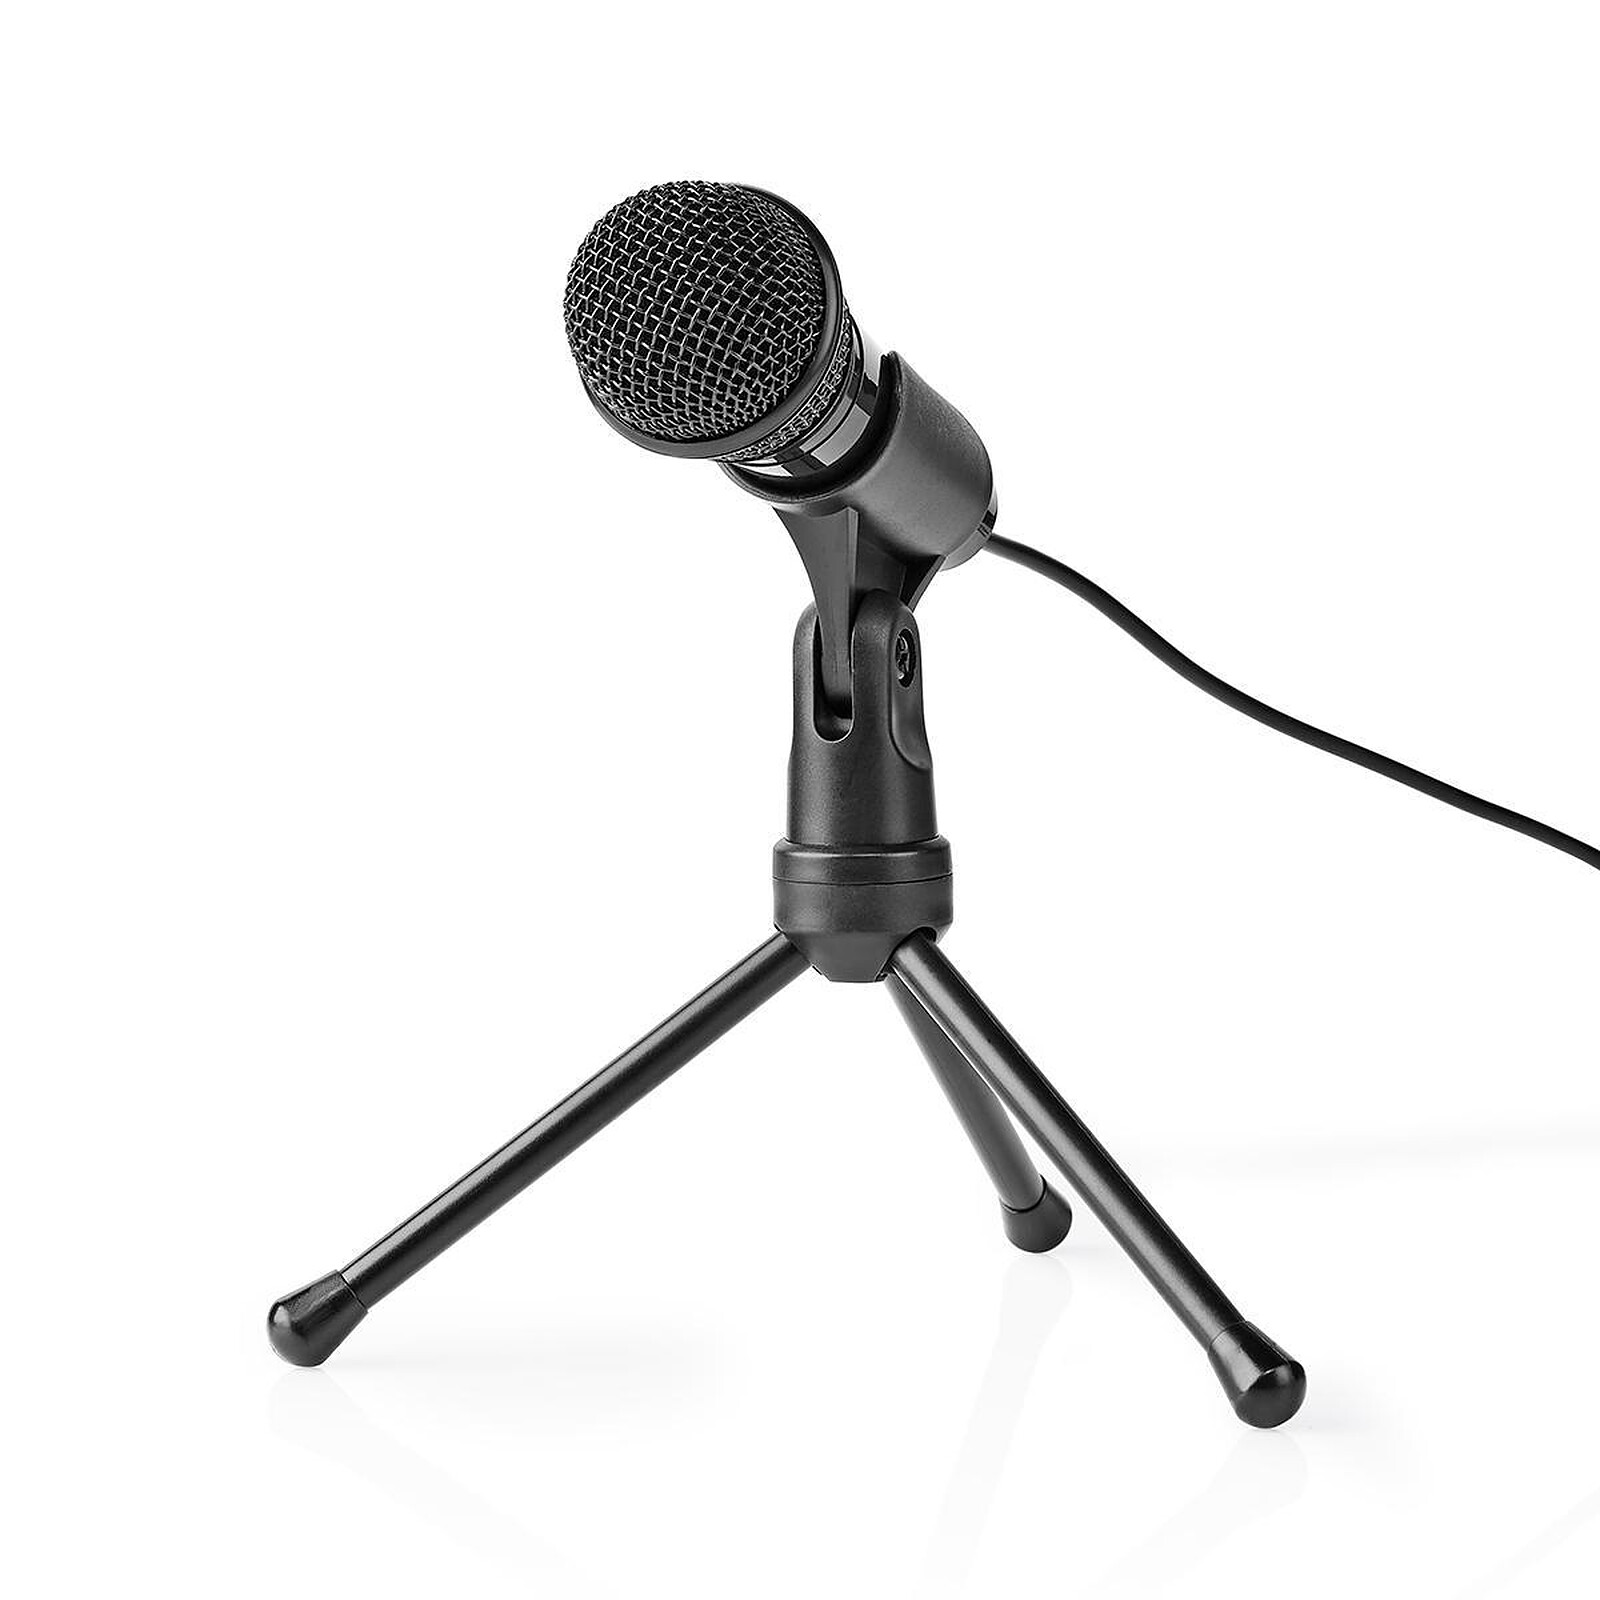 Bird UM1 - Microphone - Garantie 3 ans LDLC